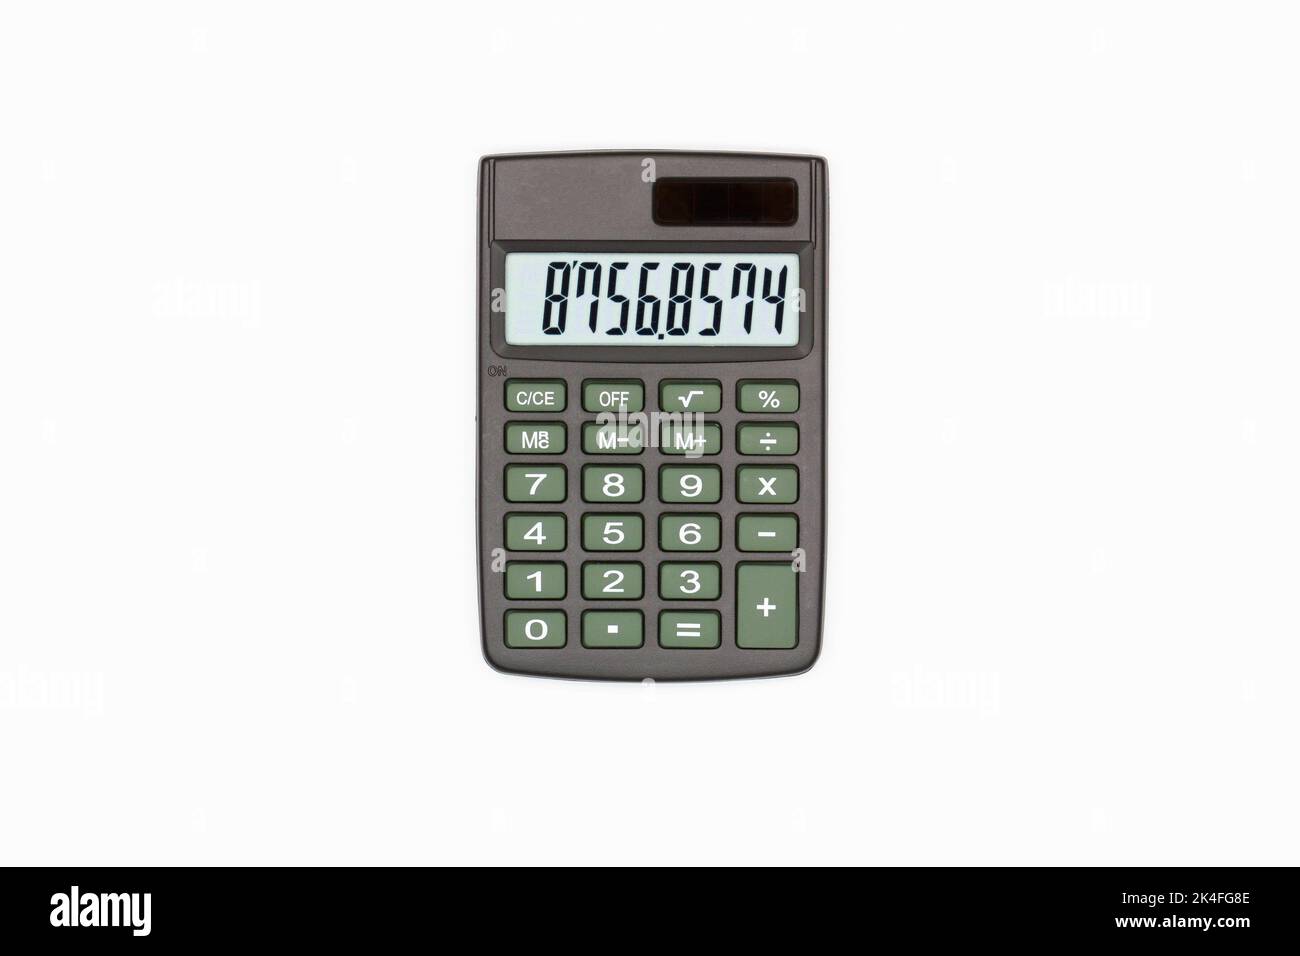 Calculatrice avec boutons marron avec chiffres sur l'écran numérique sur fond blanc. Isolé. Calculatrice financière solaire. Machine électronique Banque D'Images